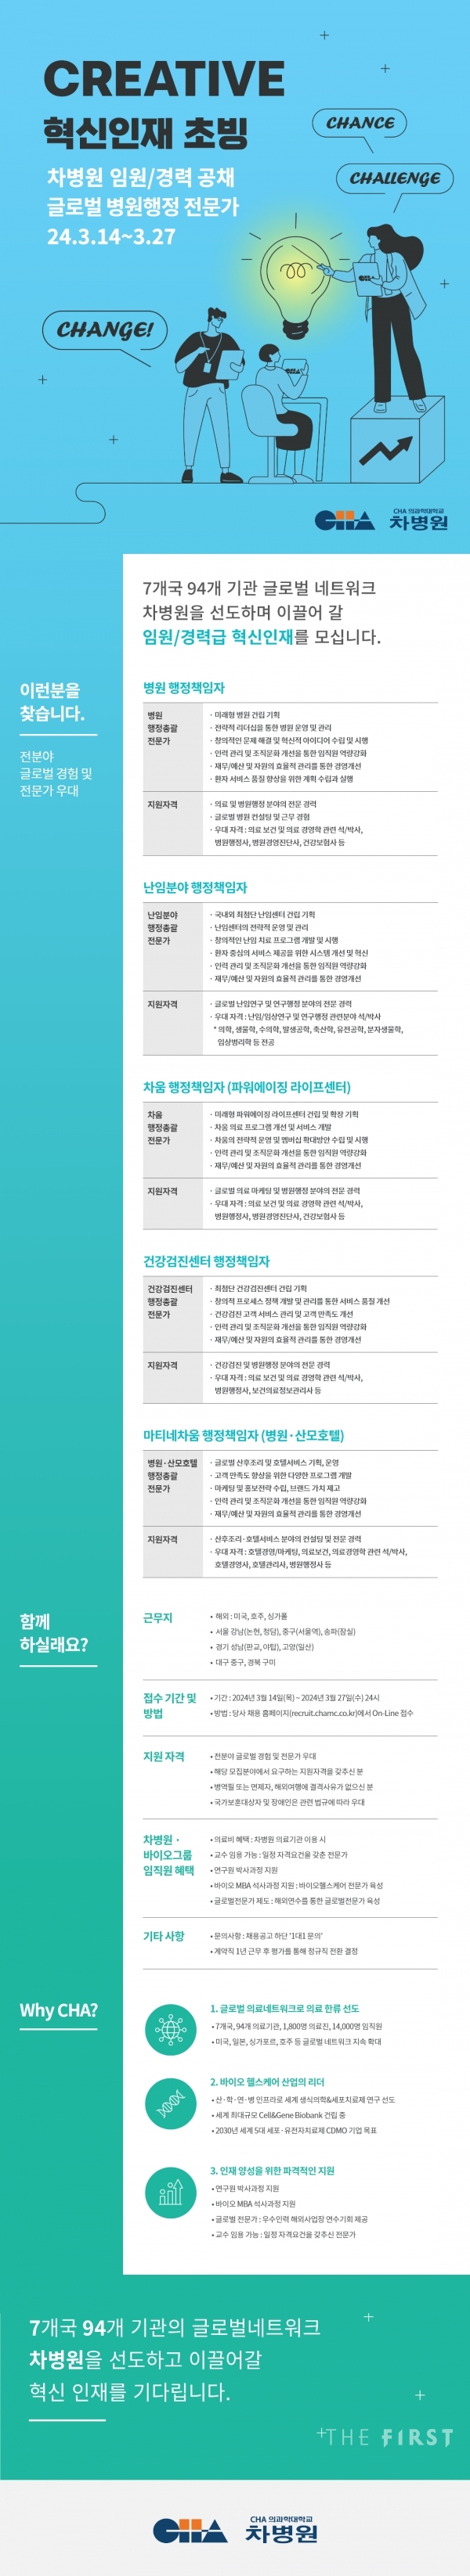 차병원, 병원 행정 전문가 임원·경력직 공개 채용